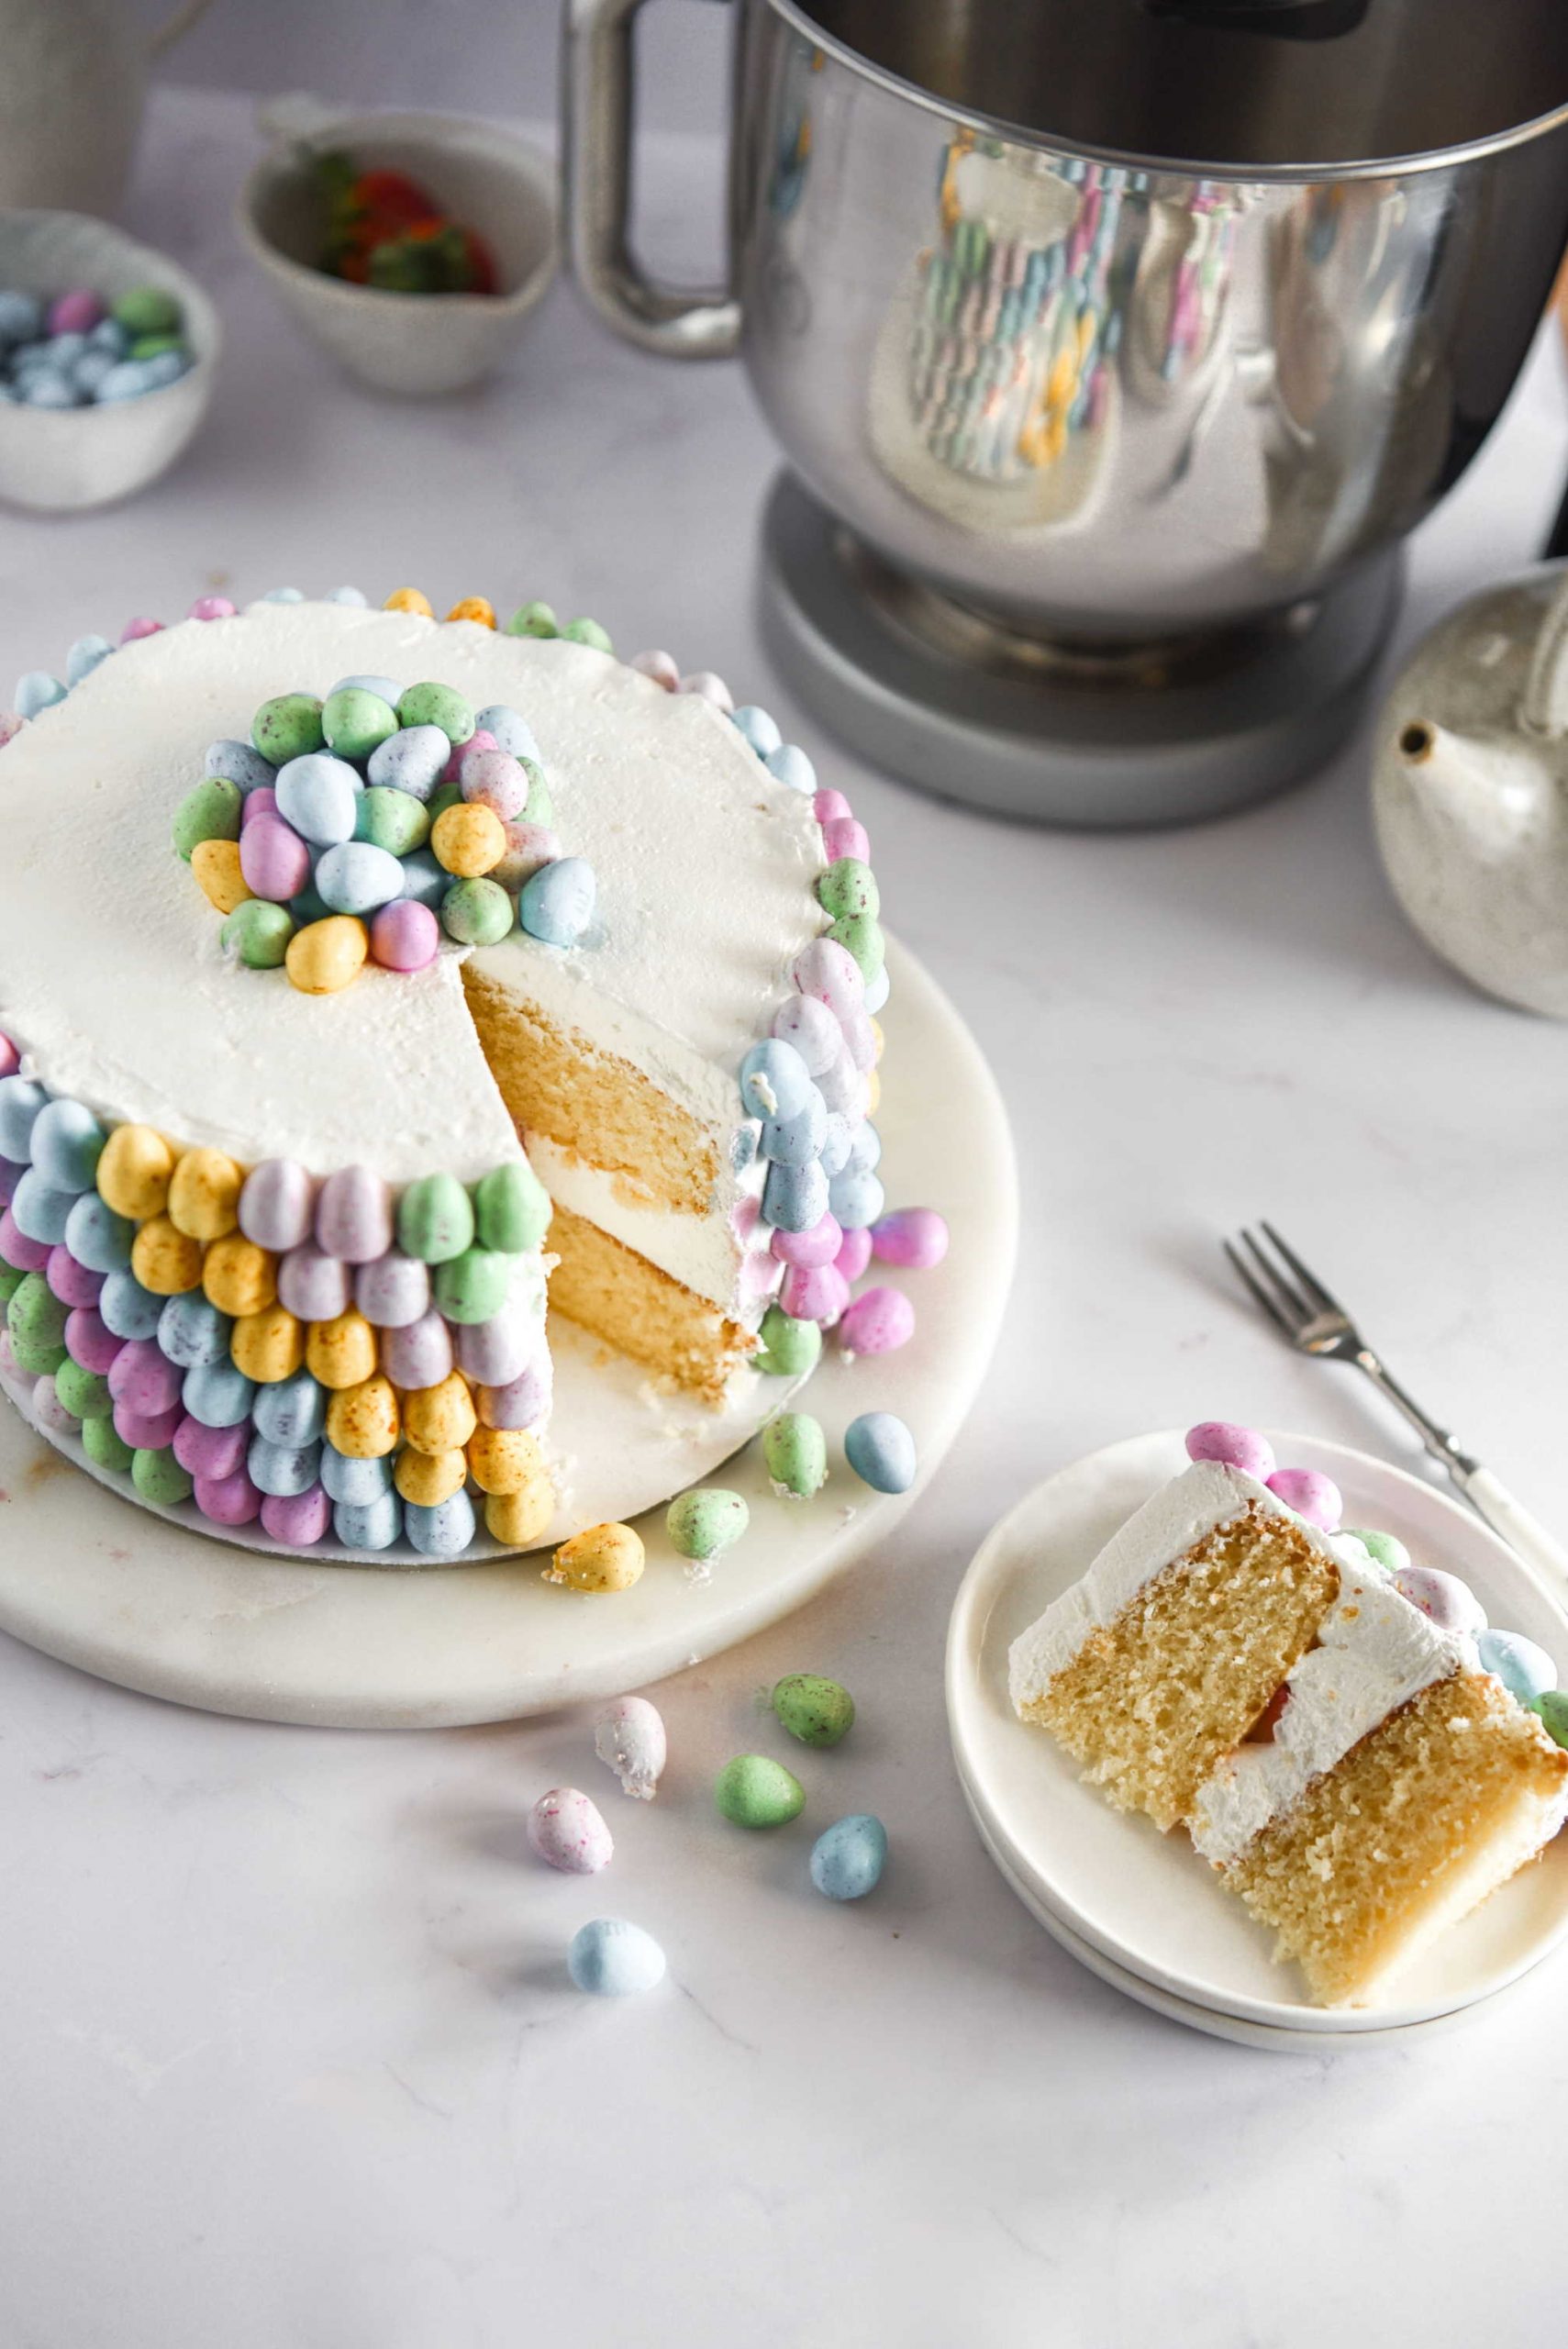 Nježna, kremasta i puna čokoladnih jaja, ova će torta obilježiti Uskrs